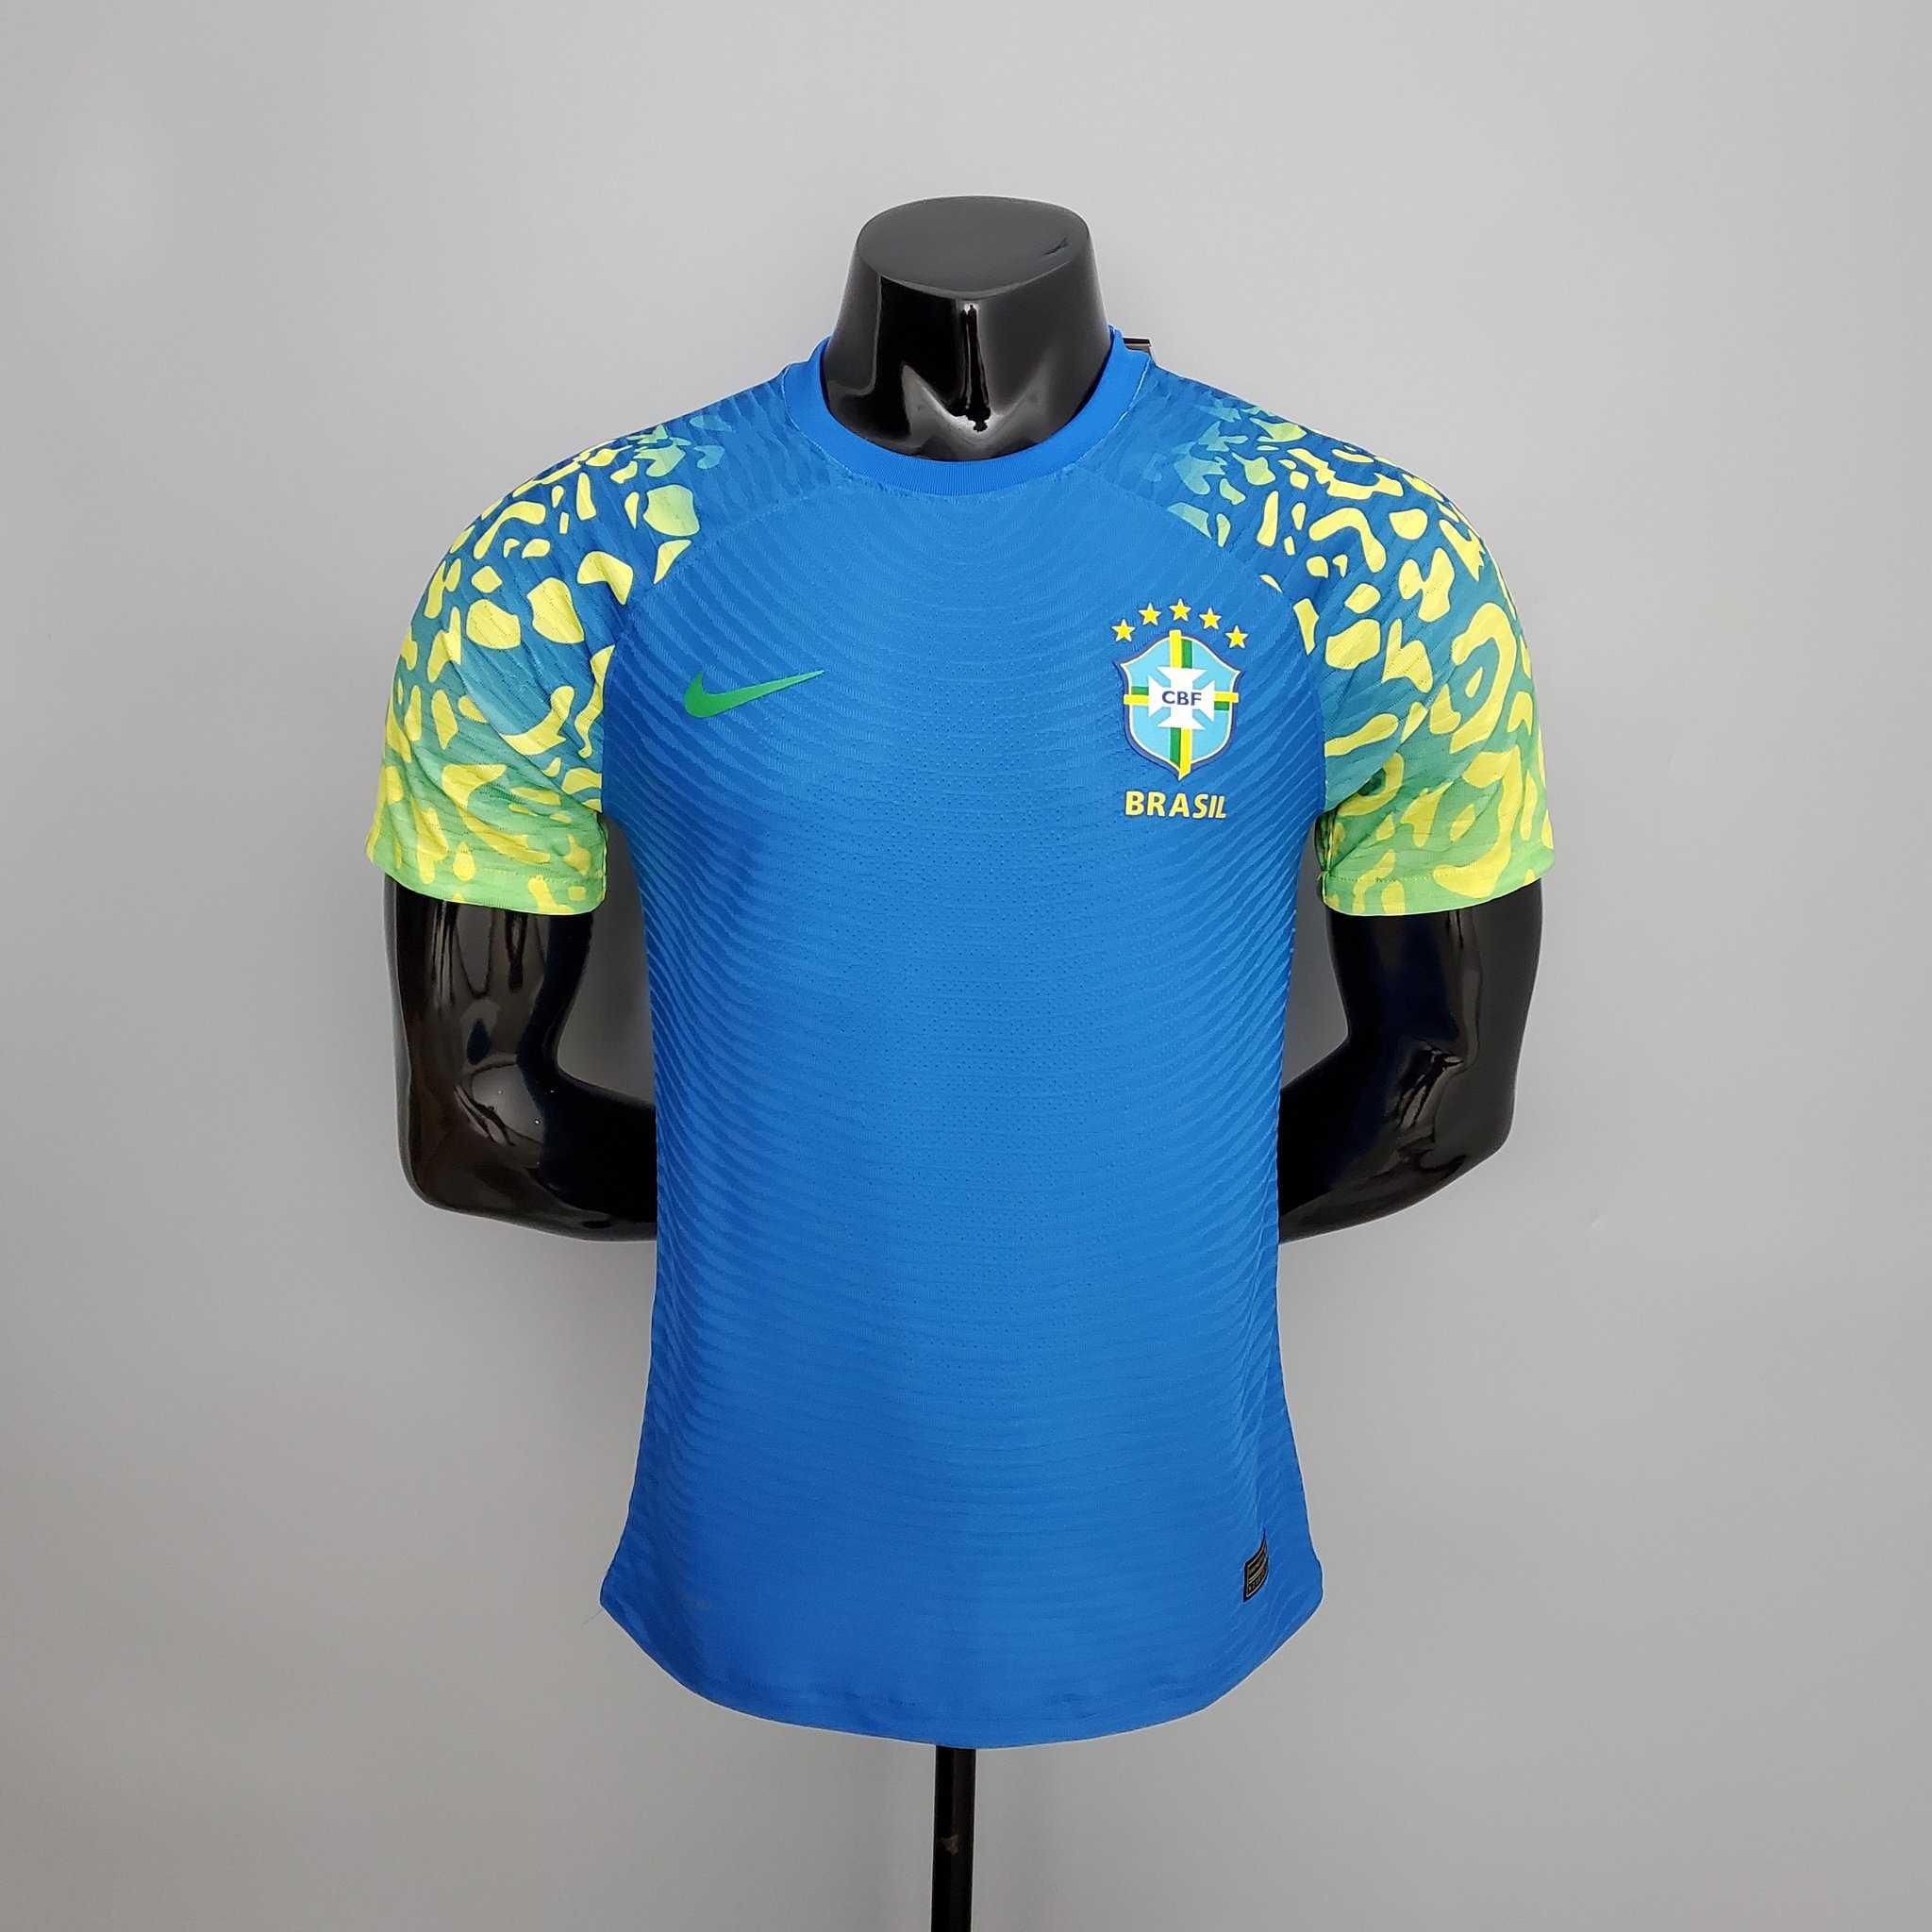 Seleção Brasileira apresenta novos uniformes para a disputa da